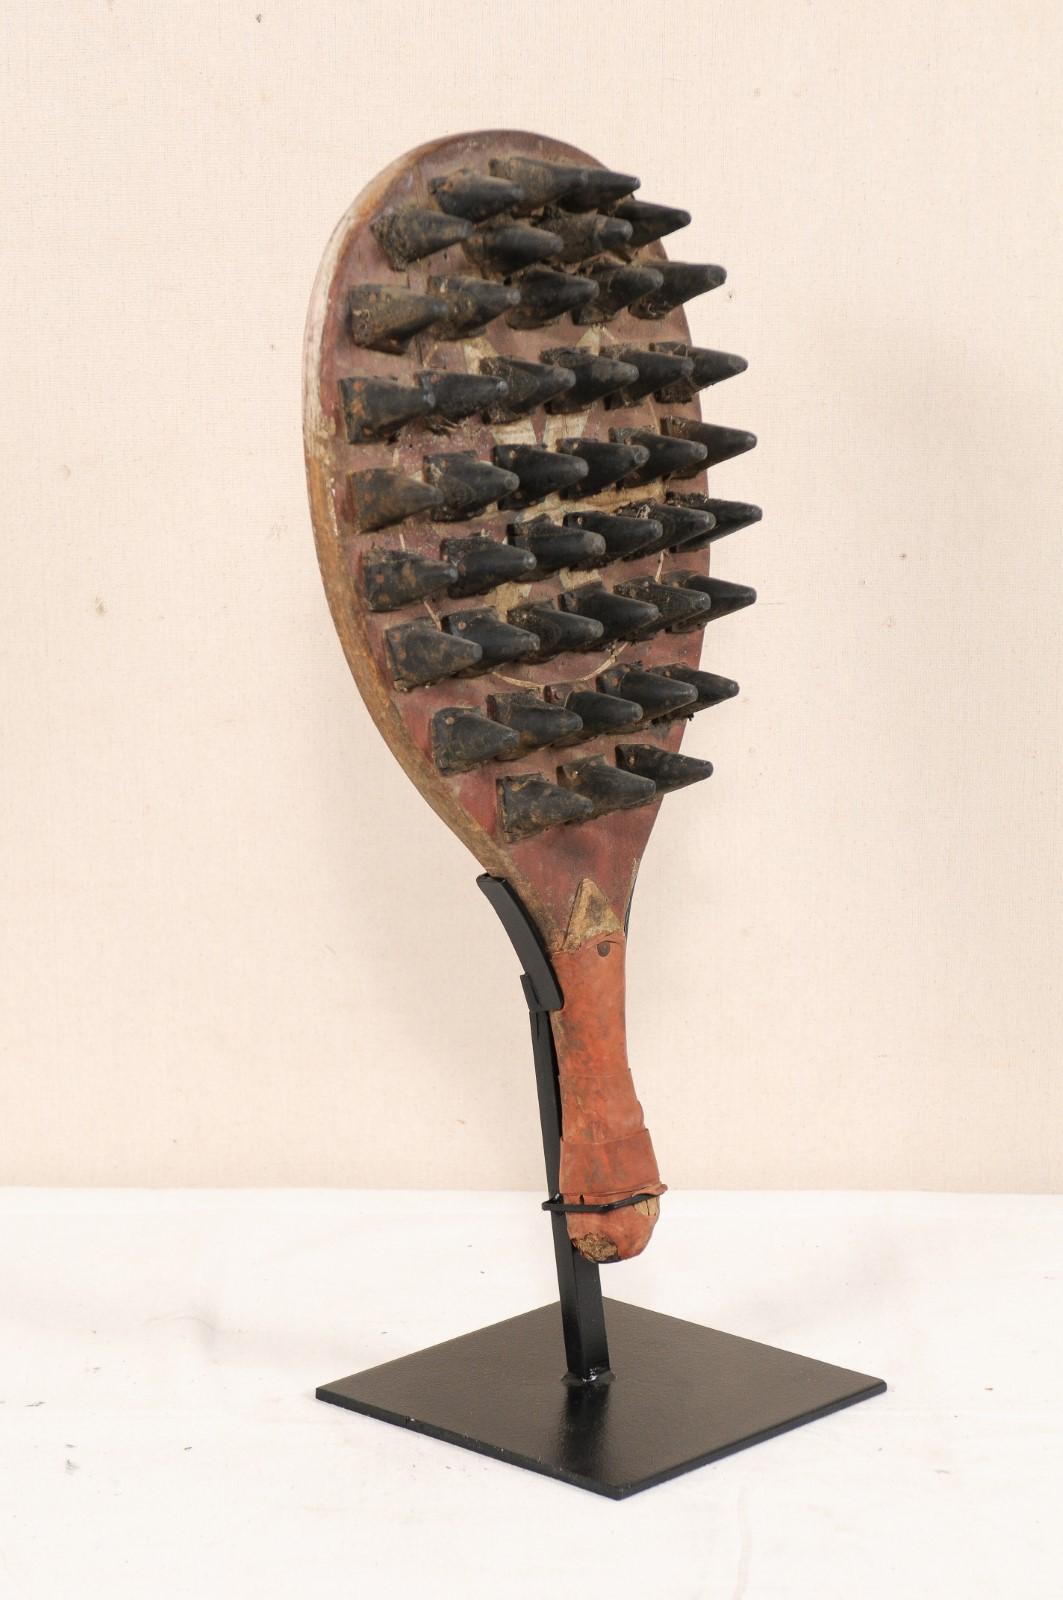 Une raquette de jeu en bois à pointes datant du milieu du 20e siècle. Cette raquette de jeu vintage originaire d'Inde est dotée d'un manche en bois et d'un corps de forme ovale avec des pointes dépassant d'un côté, avec des restes de sa peinture